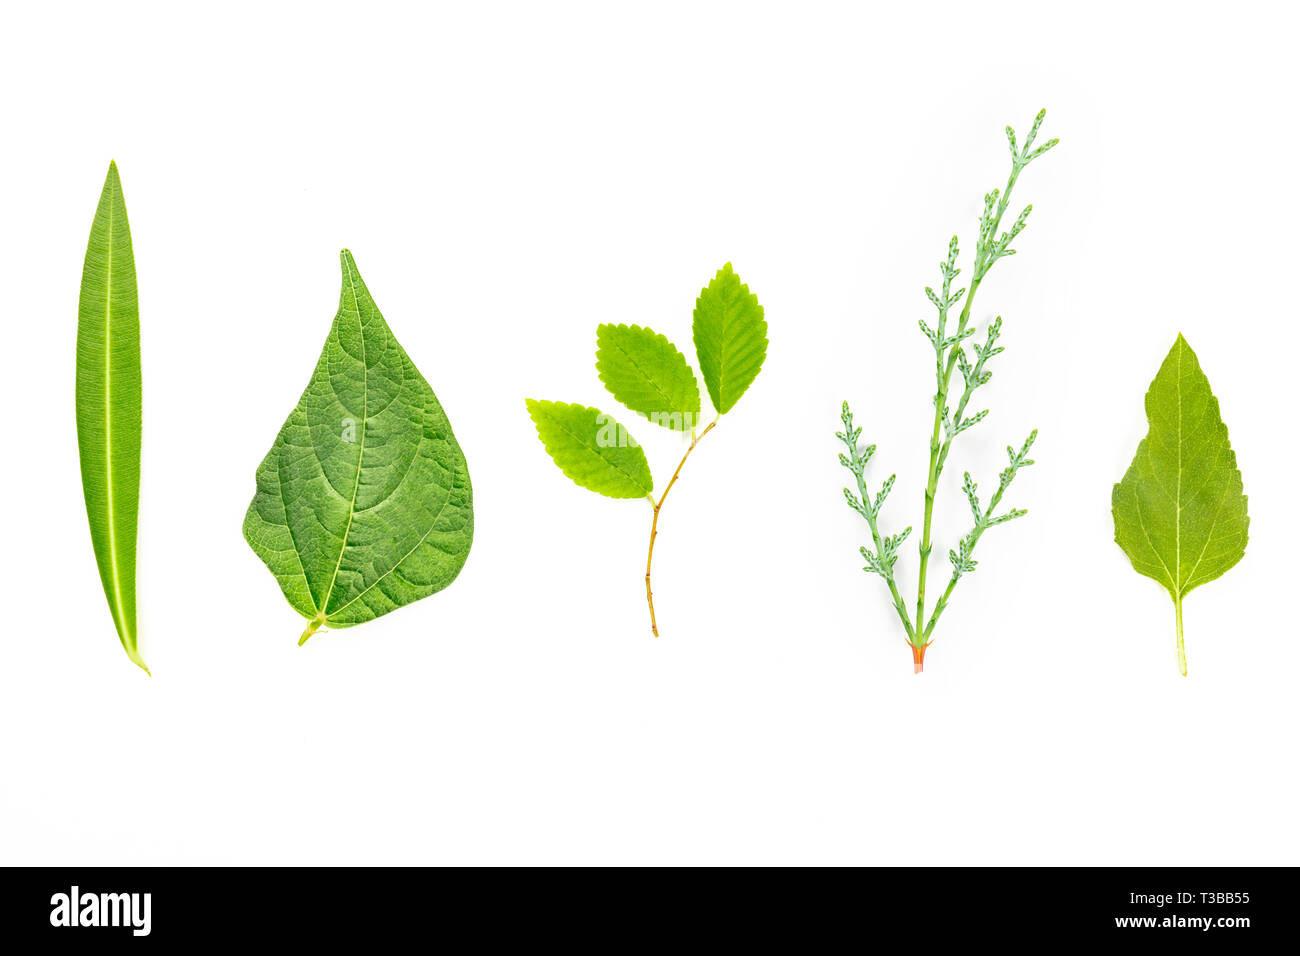 Une photo prise à la verticale d'une variété de feuilles vertes sur fond blanc Banque D'Images